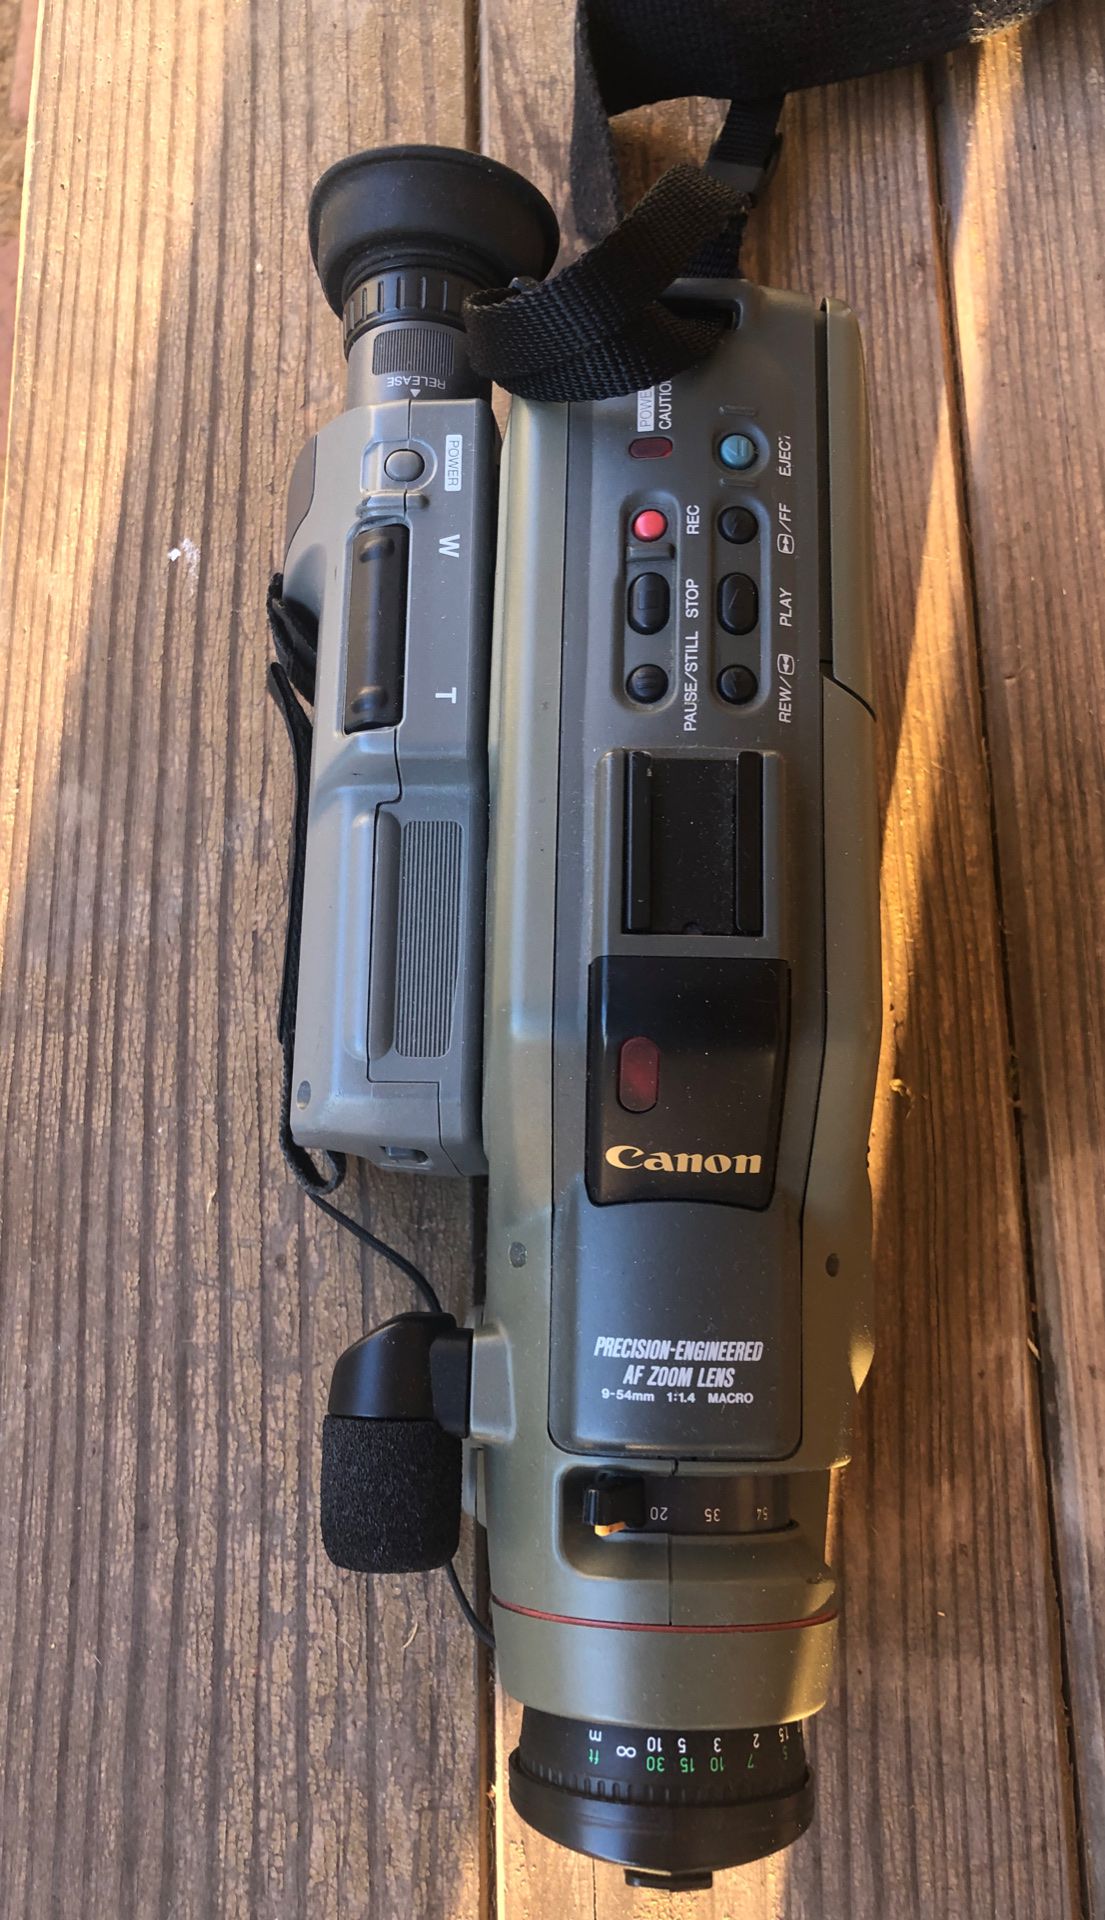 Canon E80- 8mm Video camera and recorder